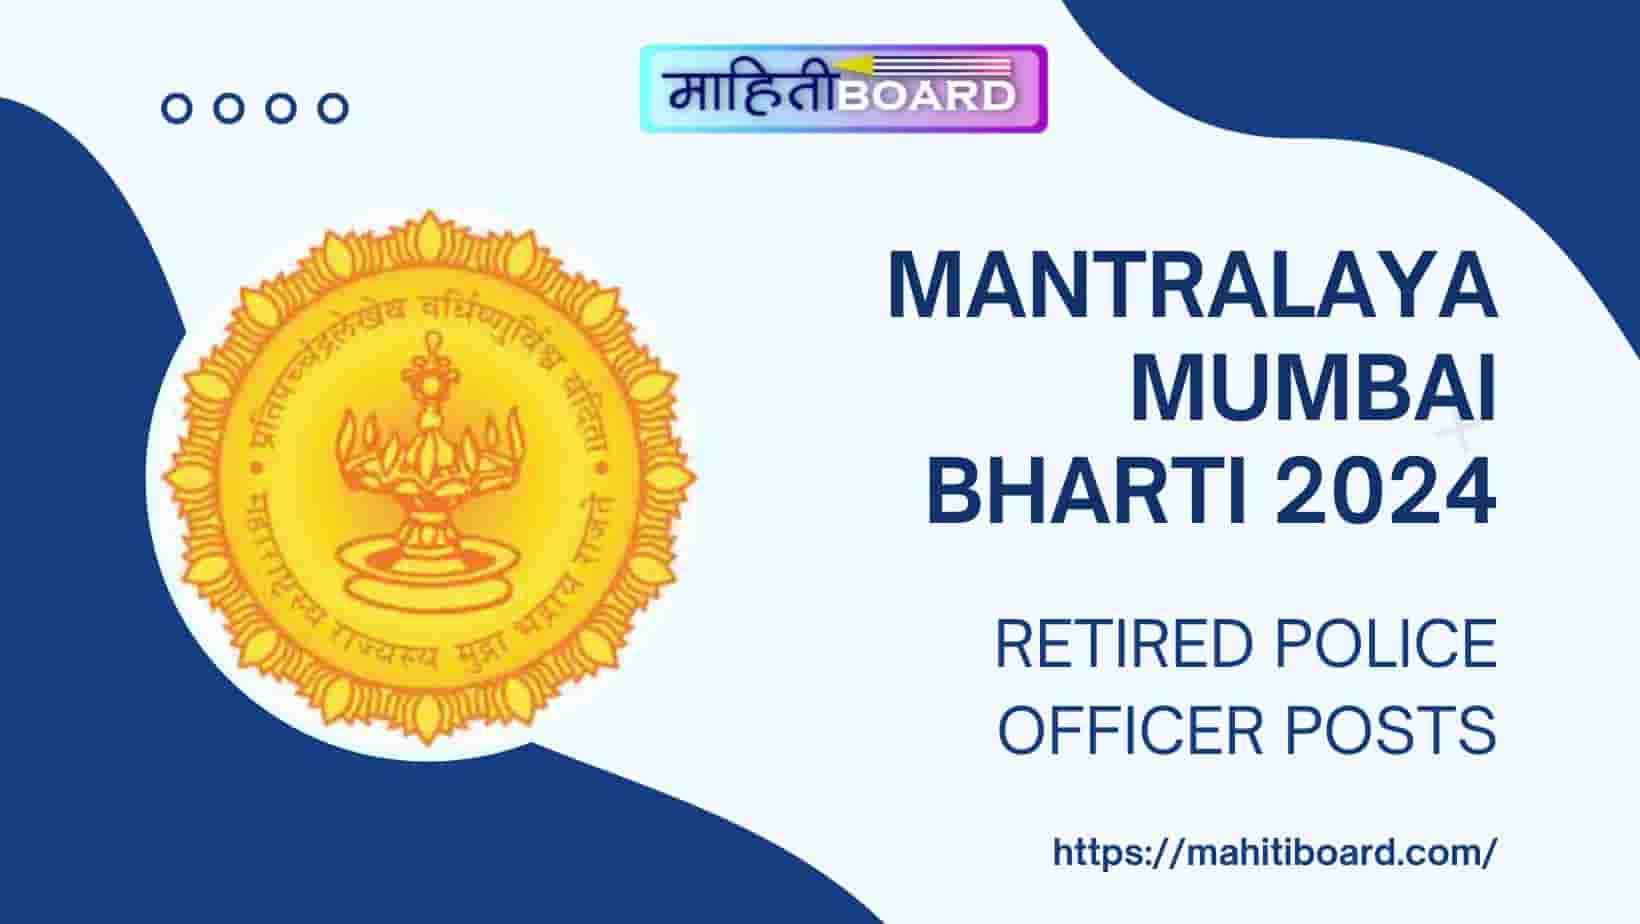 Mantralaya Mumbai Bharti 2024